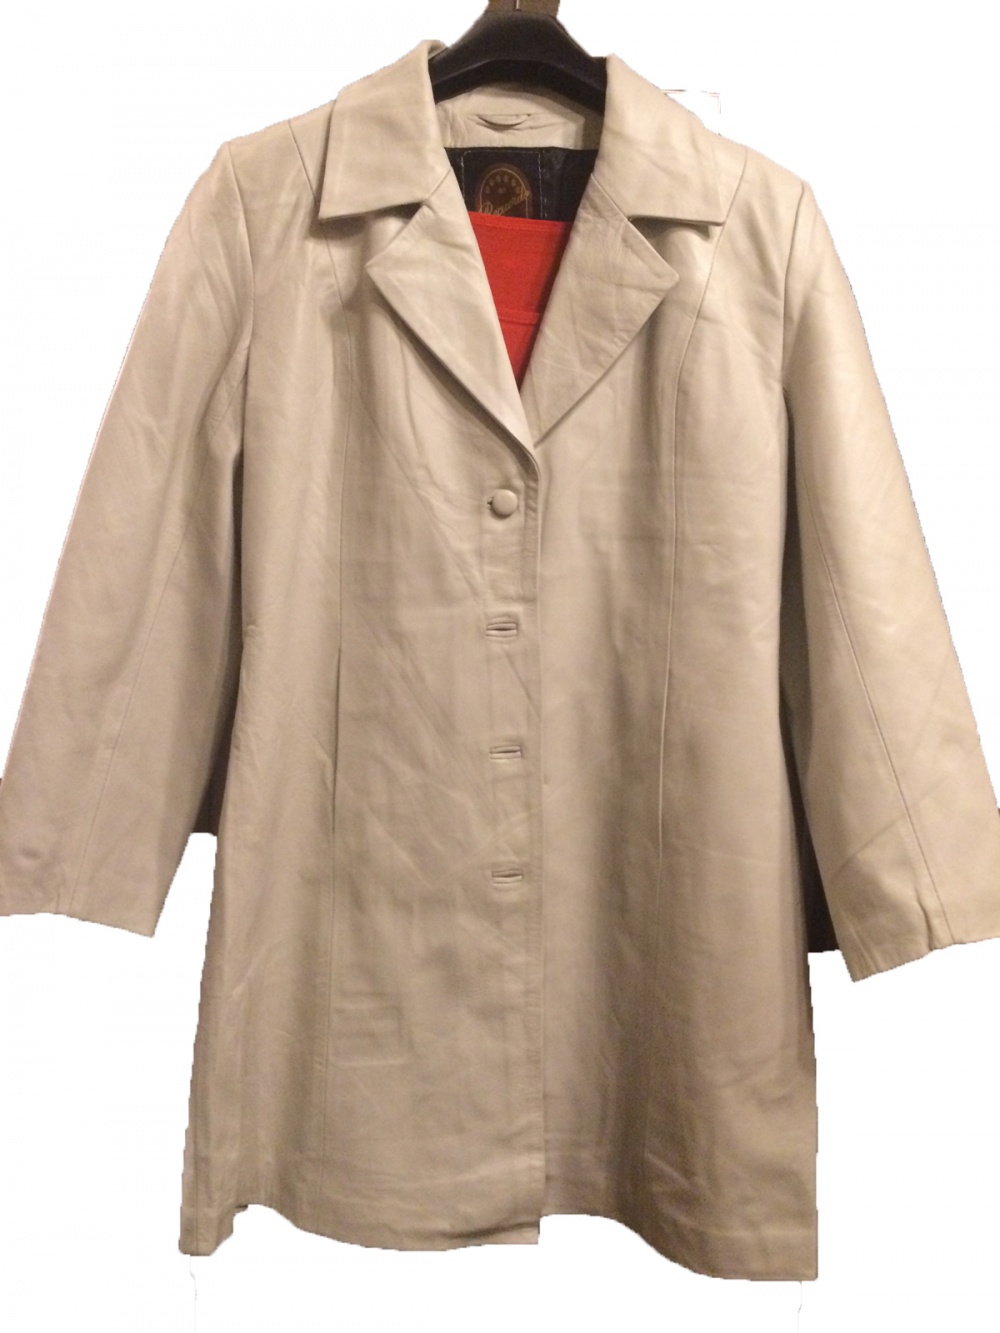 Кожаное светлое пальто, размер XL (48-50), один раз надето, натуральная кожа, подходит для  юбок и официальных костюмов